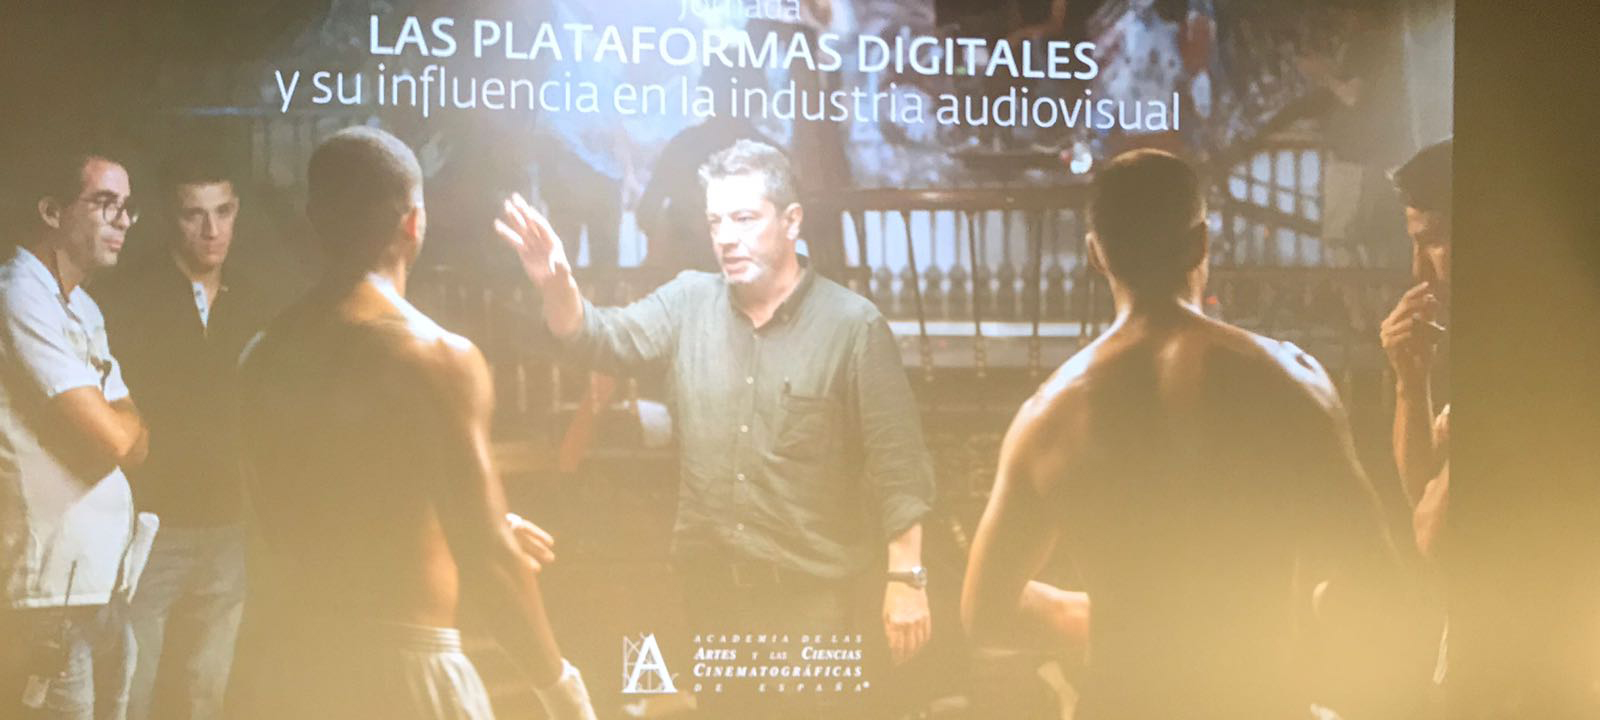 Las plataformas digitales han sido tema de debate en la Academia de Cine